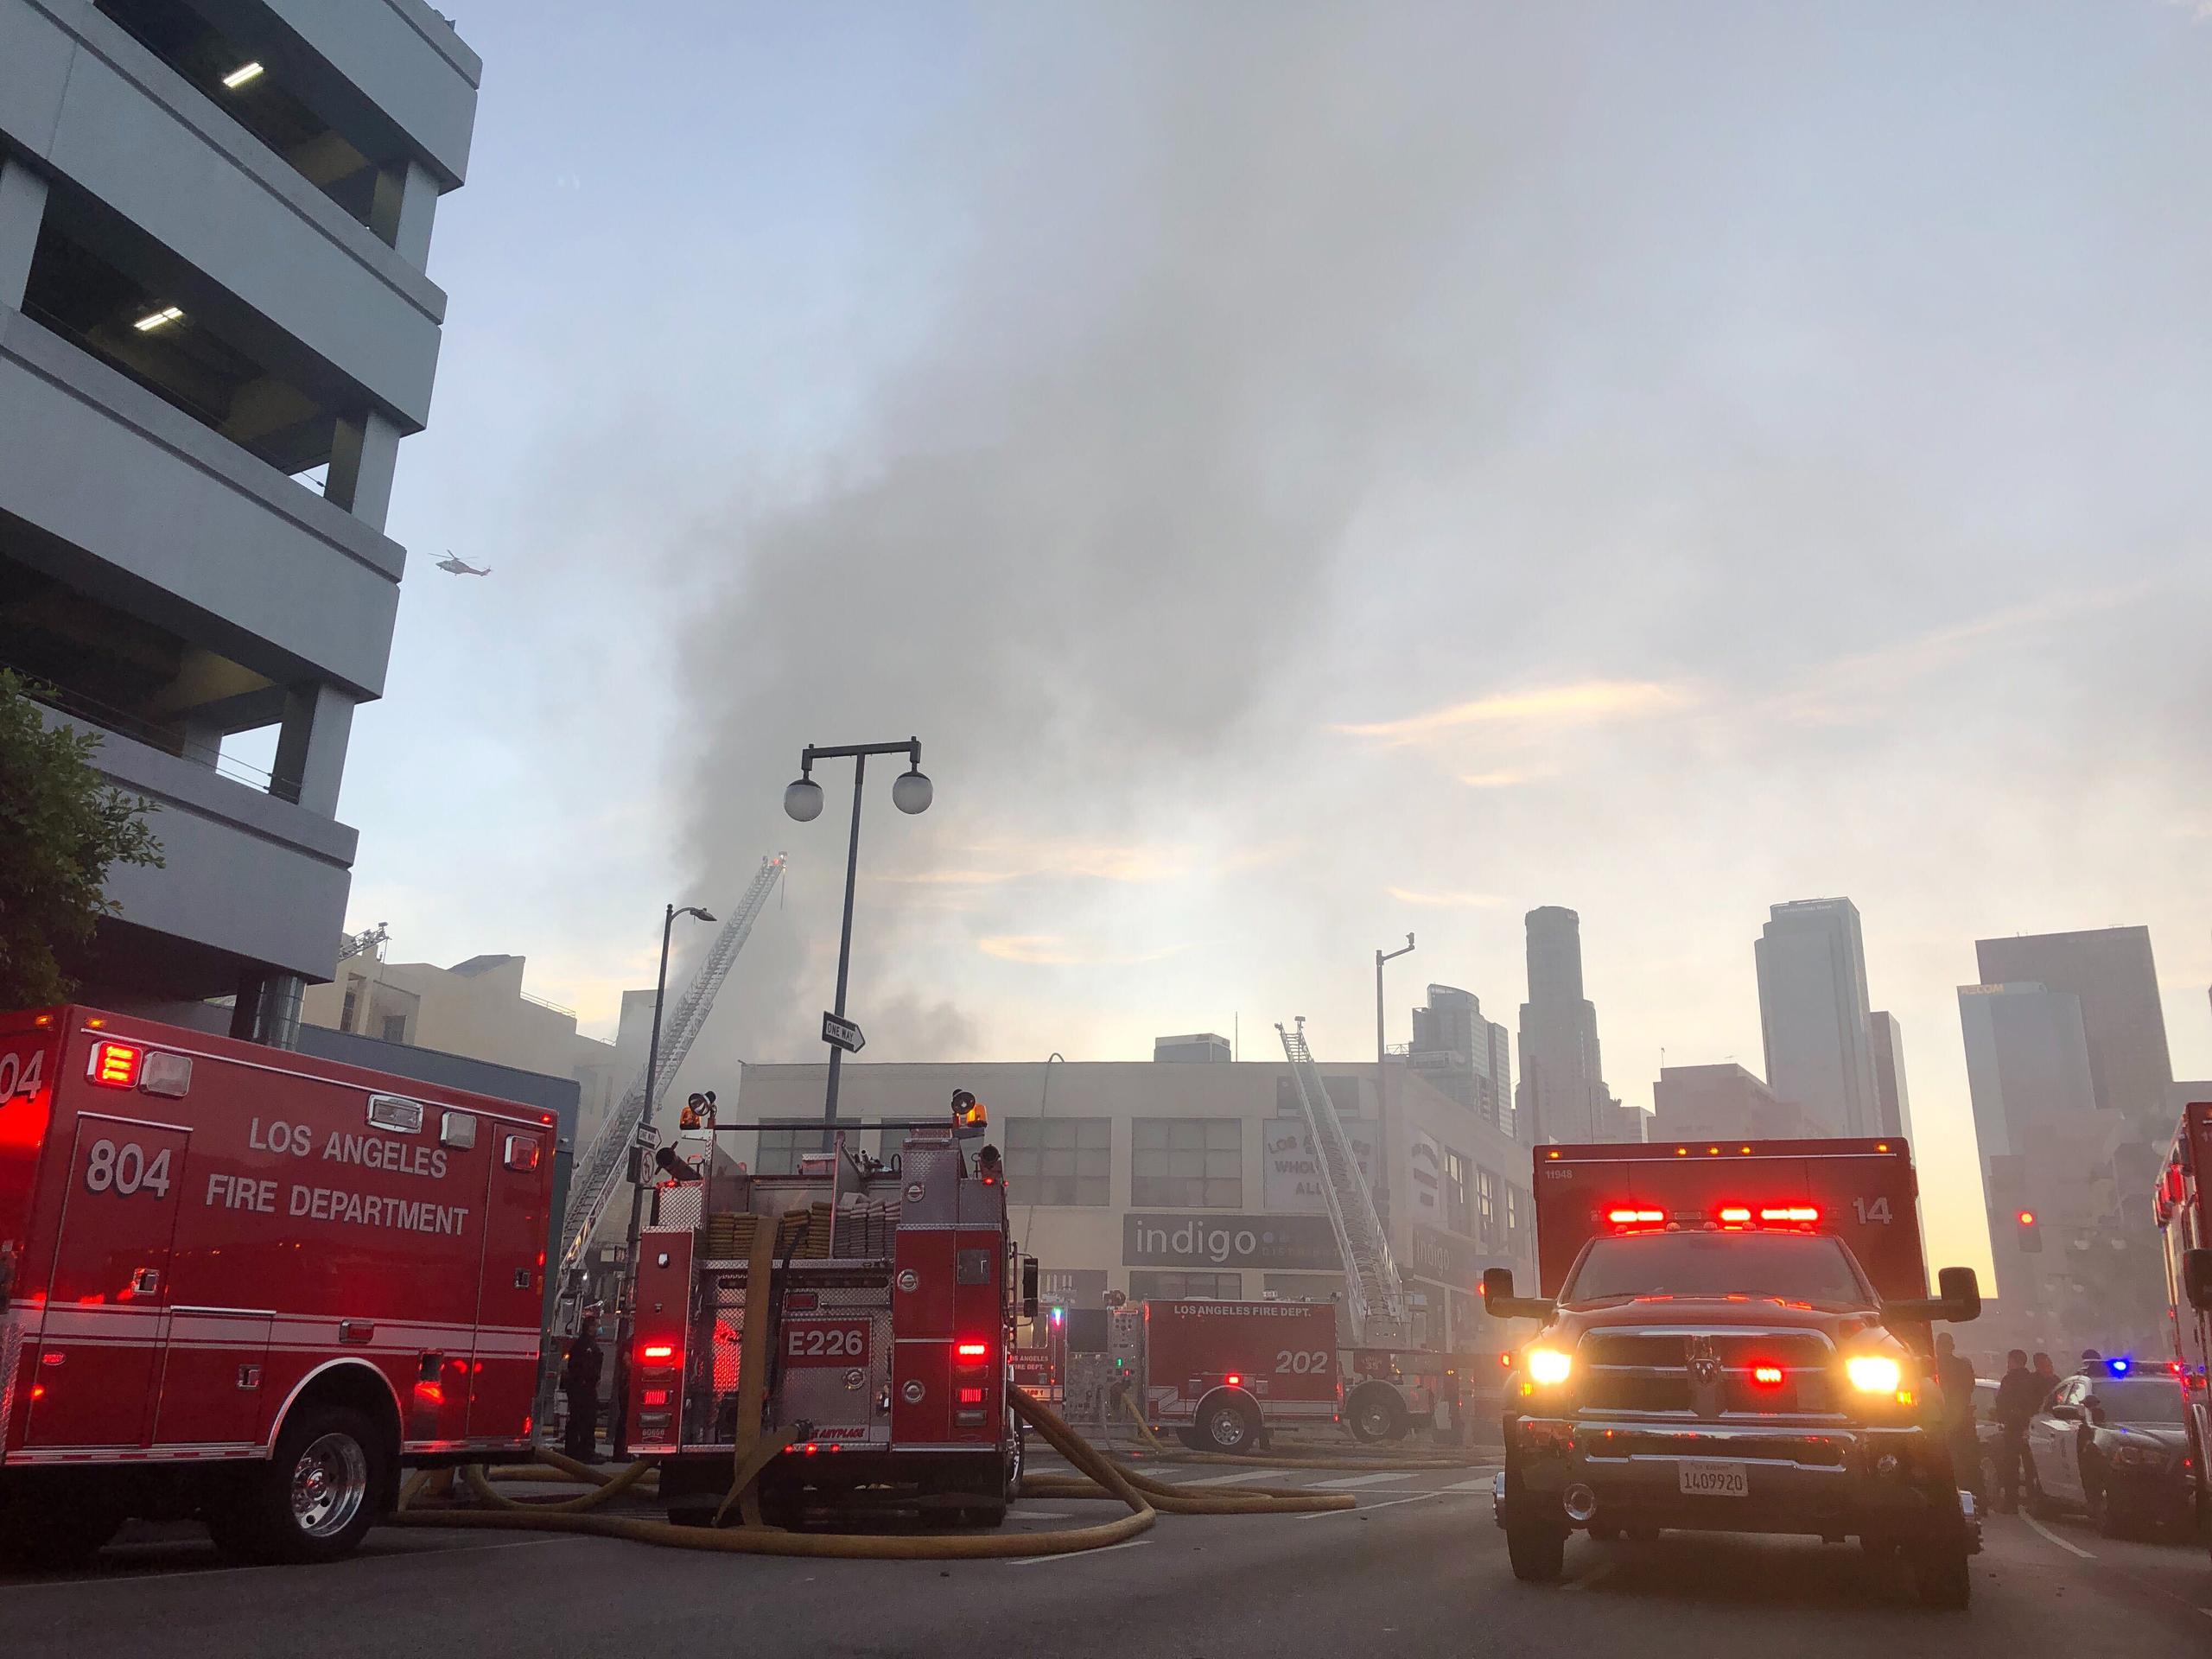 Los bomberos respondían a un aviso de incendio y tuvieron que correr para salvarse cuando estalló una bola de fuego. Las llamas salieron del edificio y calcinaron un camión de bomberos al otro lado de la calle.